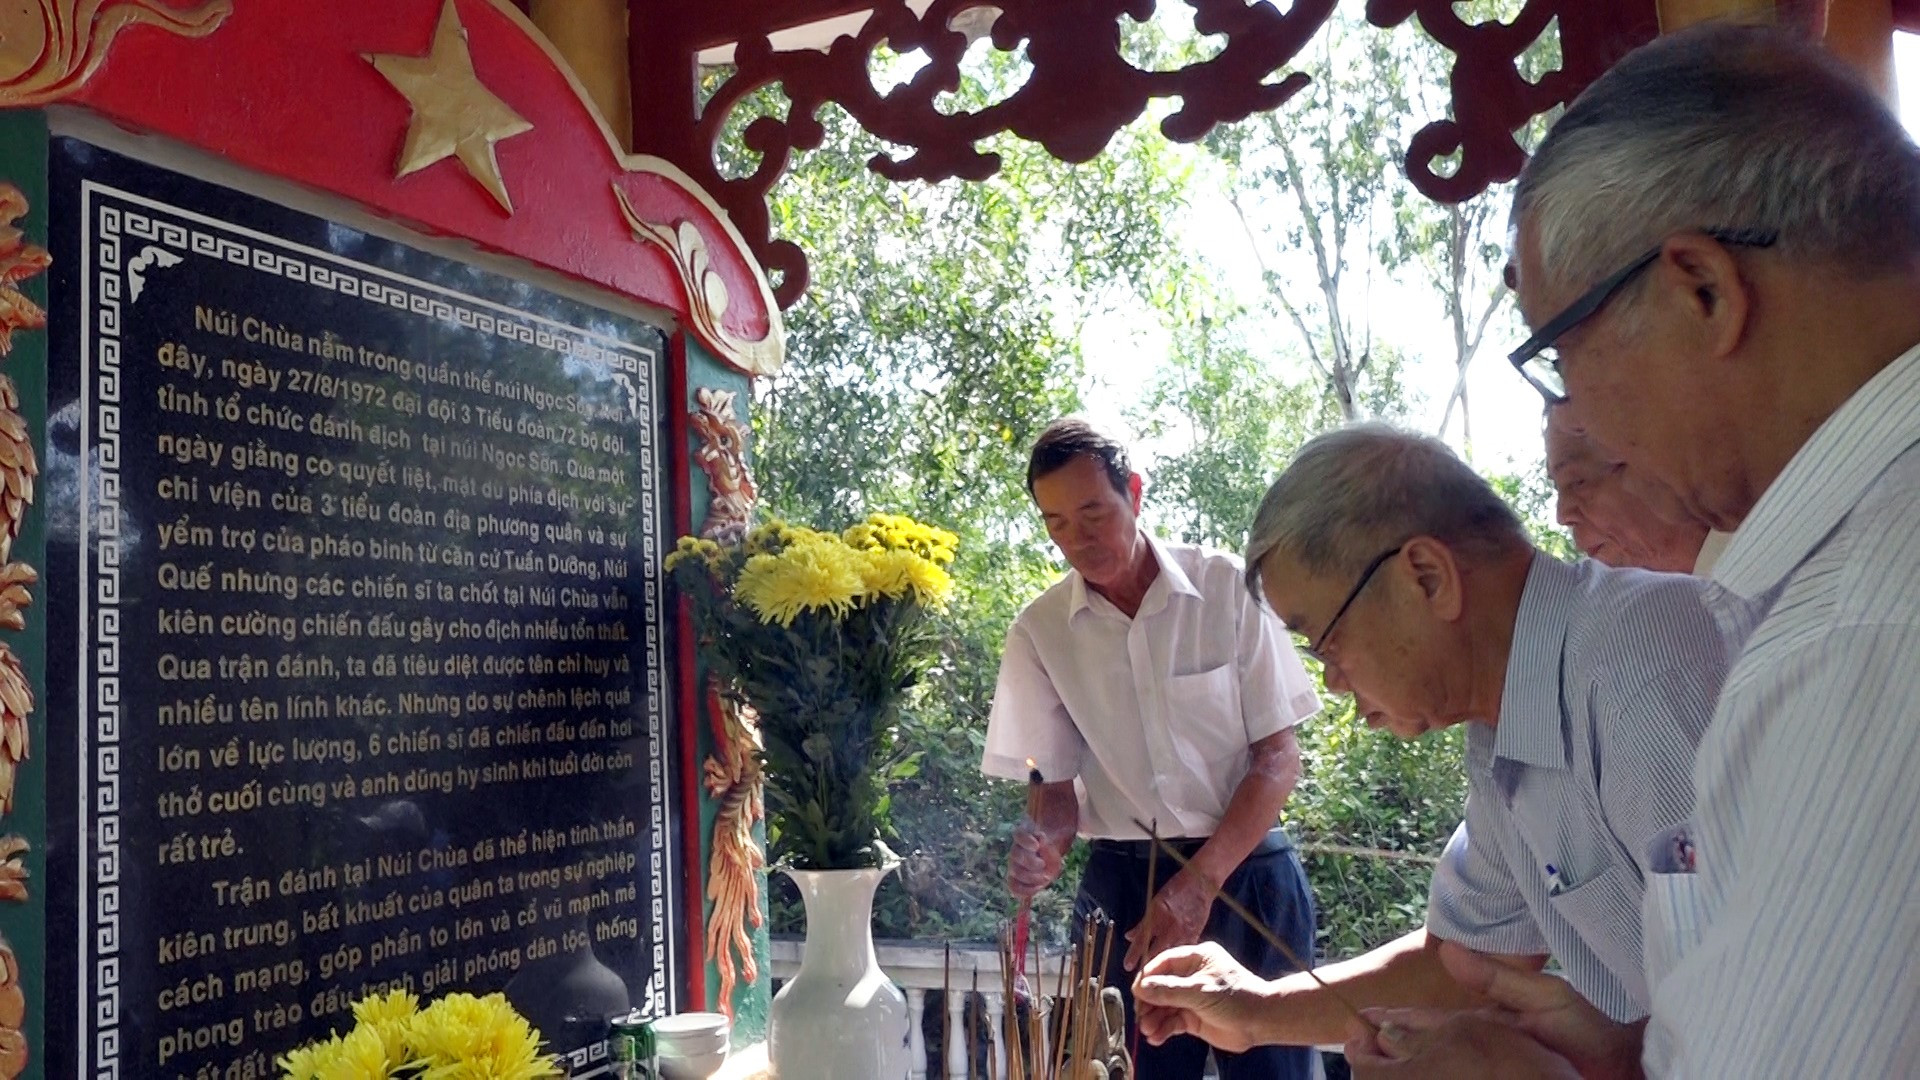 Cựu chiến binh Tiểu đoàn 72 Quảng Nam thắp hương tưởng niệm các liệt sĩ hy sinh tại Núi Chùa. Ảnh: MT